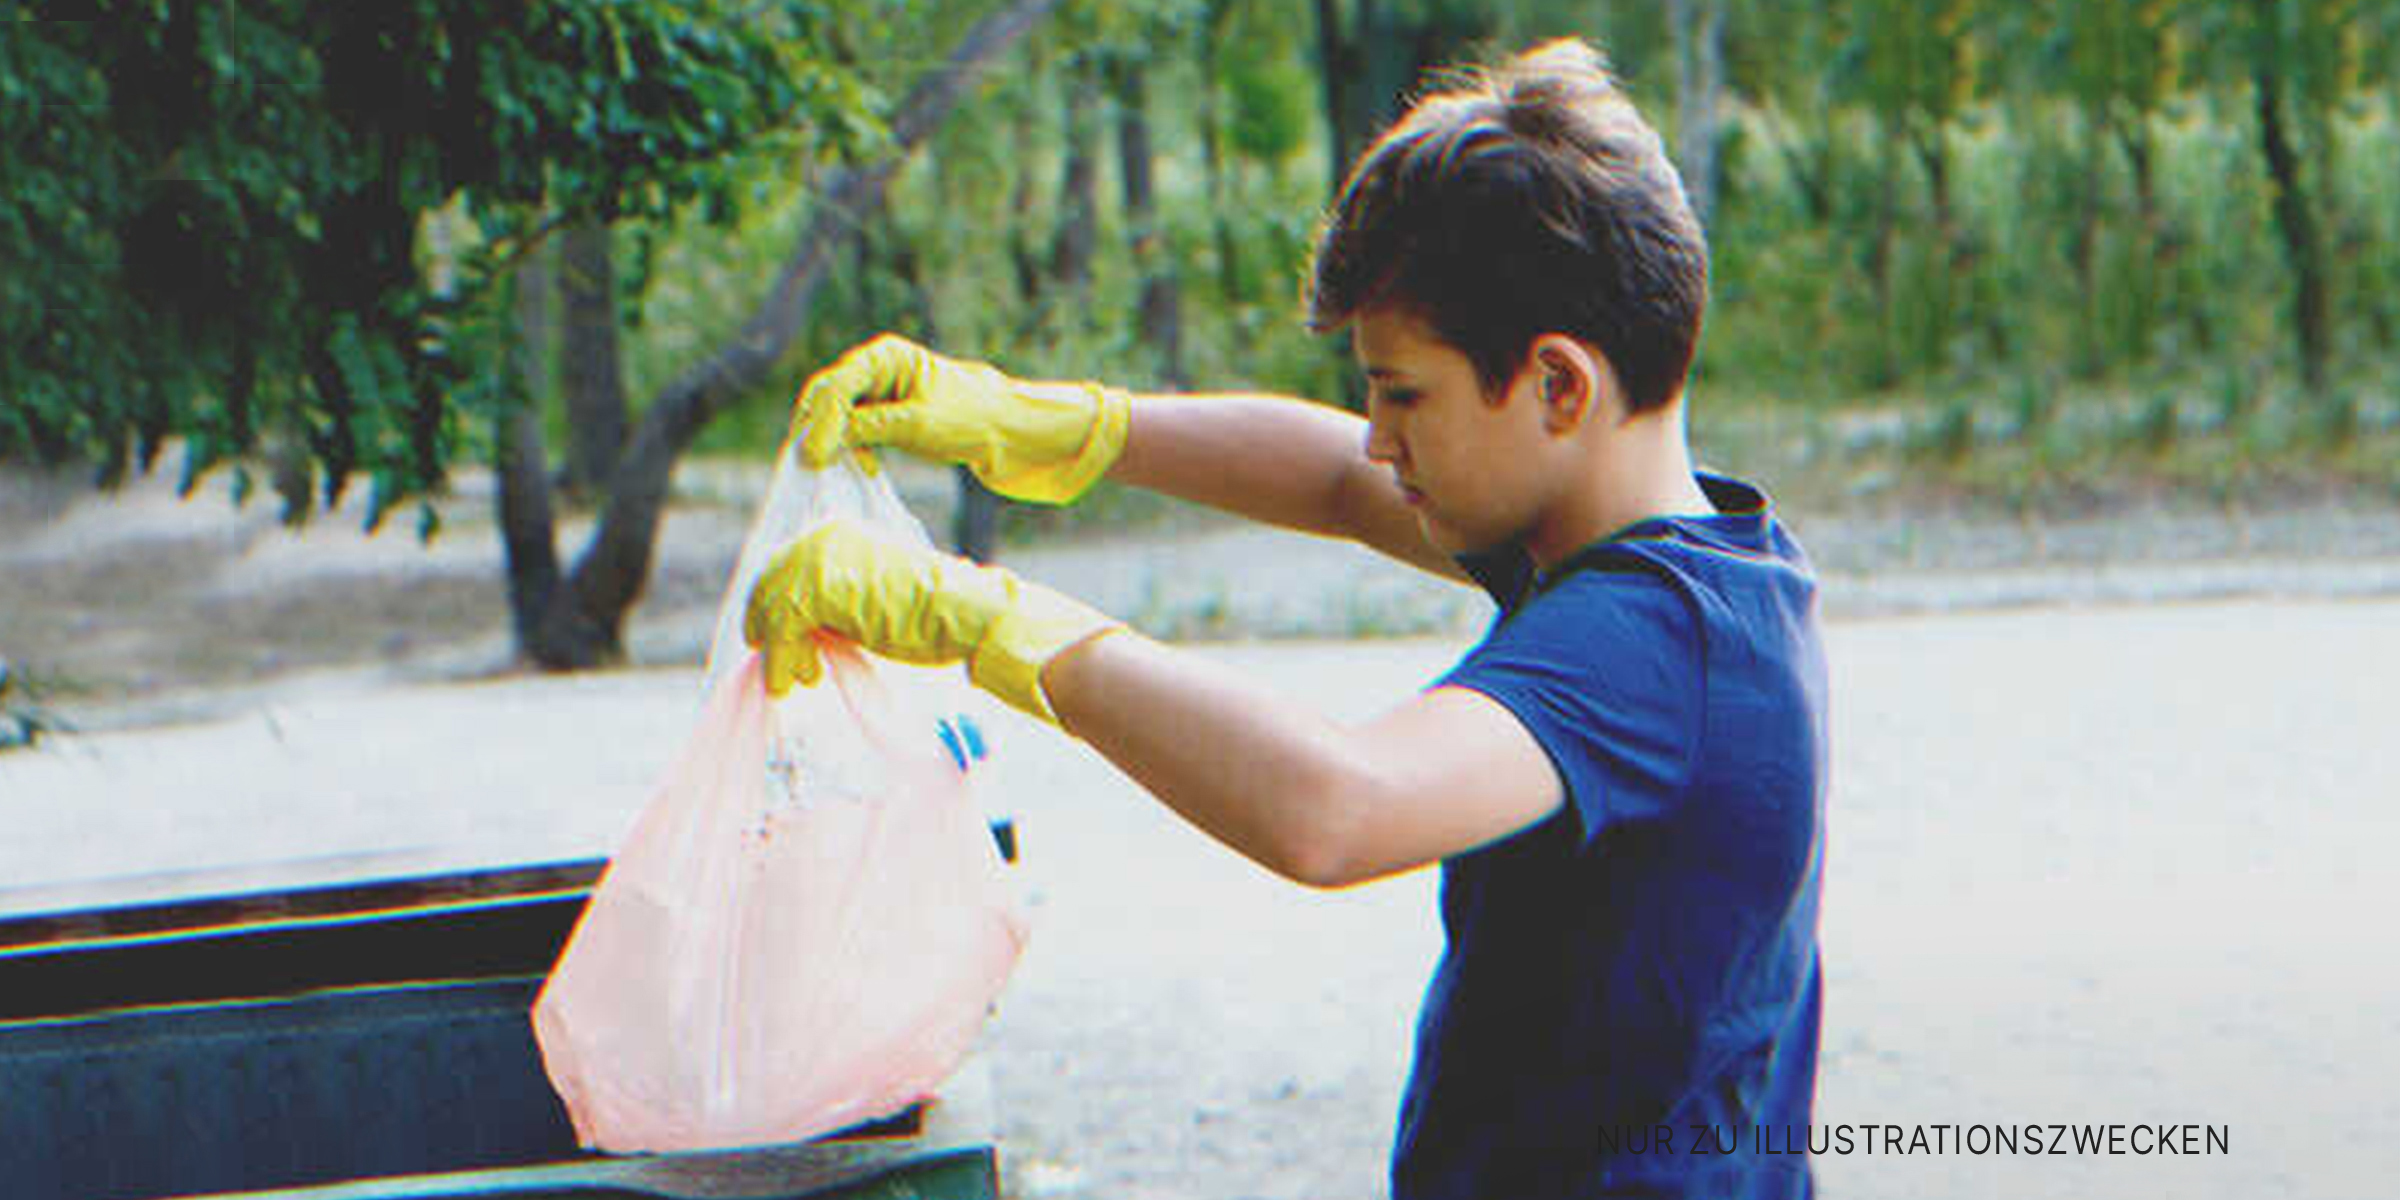 Junge räumt Müll auf | Quelle: Shutterstock